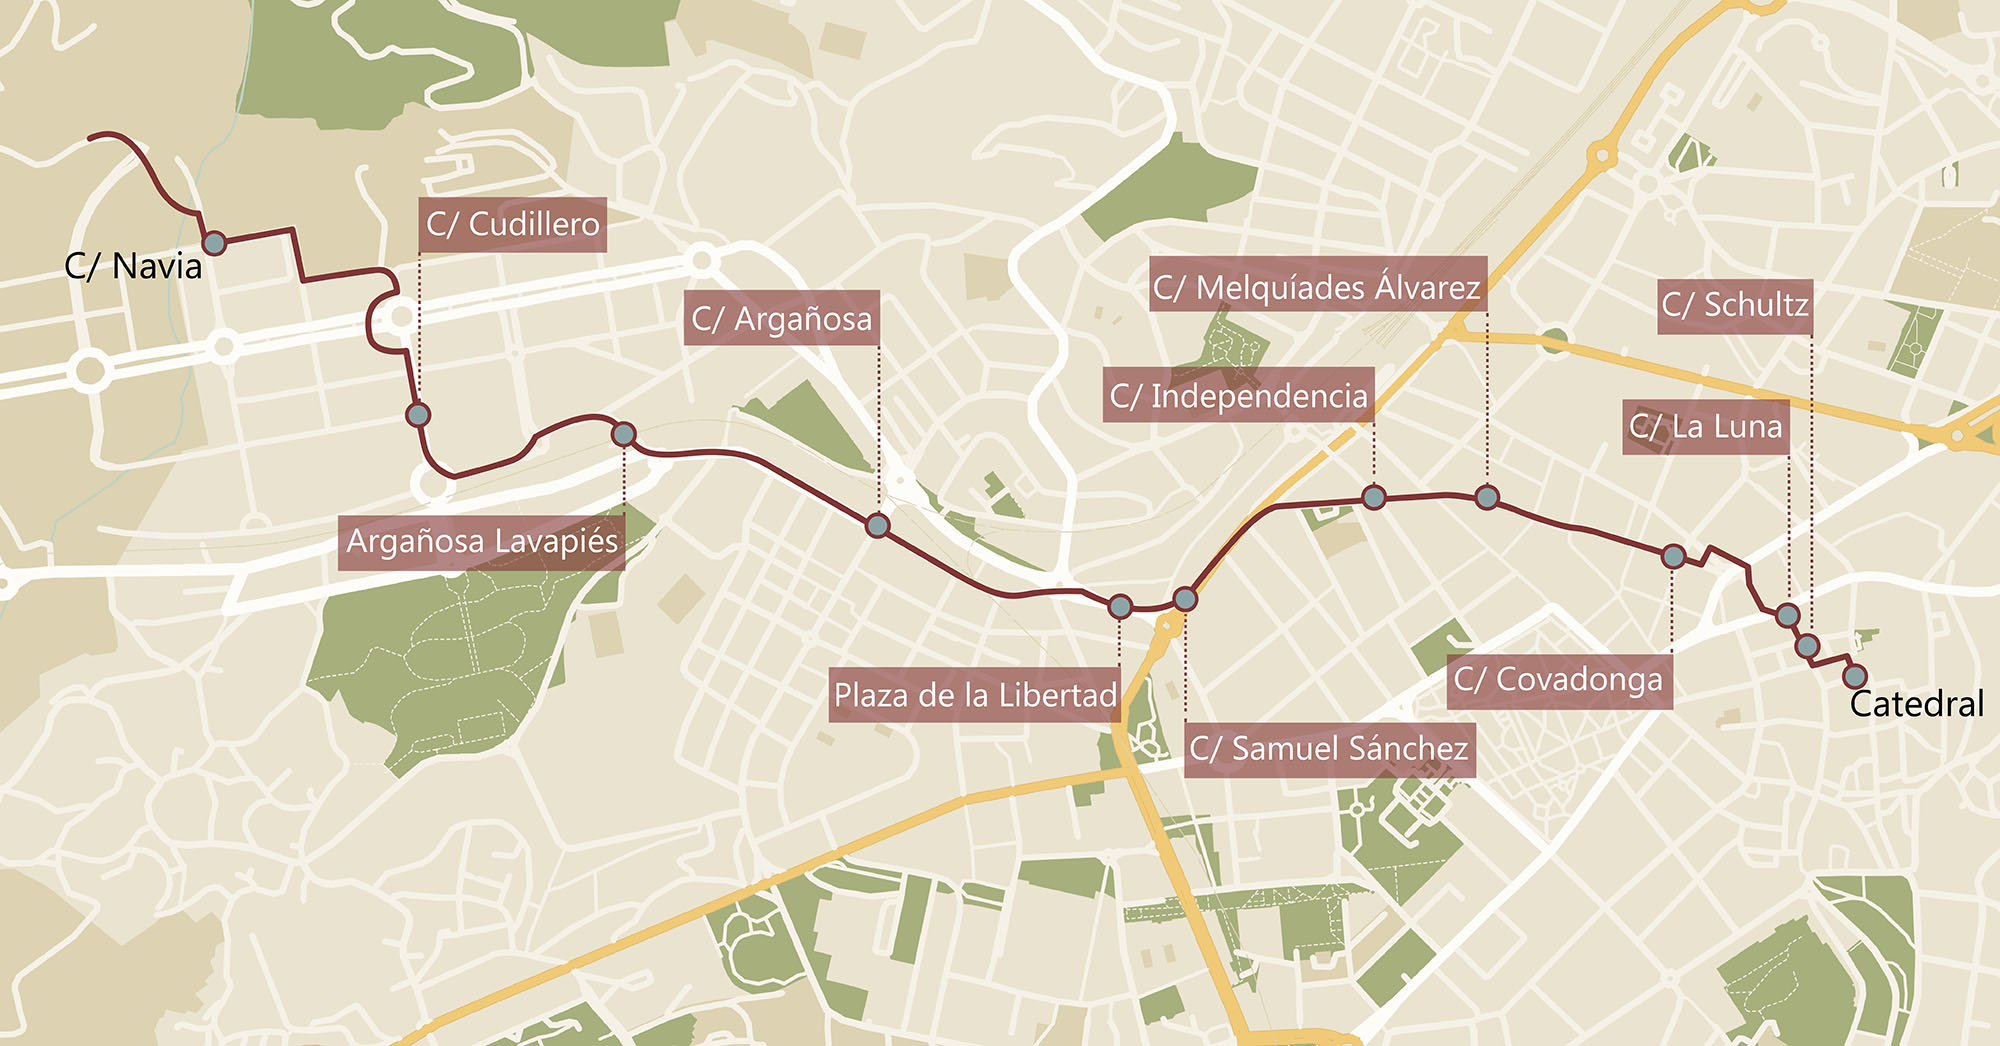 Mapa del Camino de Santiago en Oviedo, donde se indican las calles que recorre el Camino Primitivo por la zona urbana